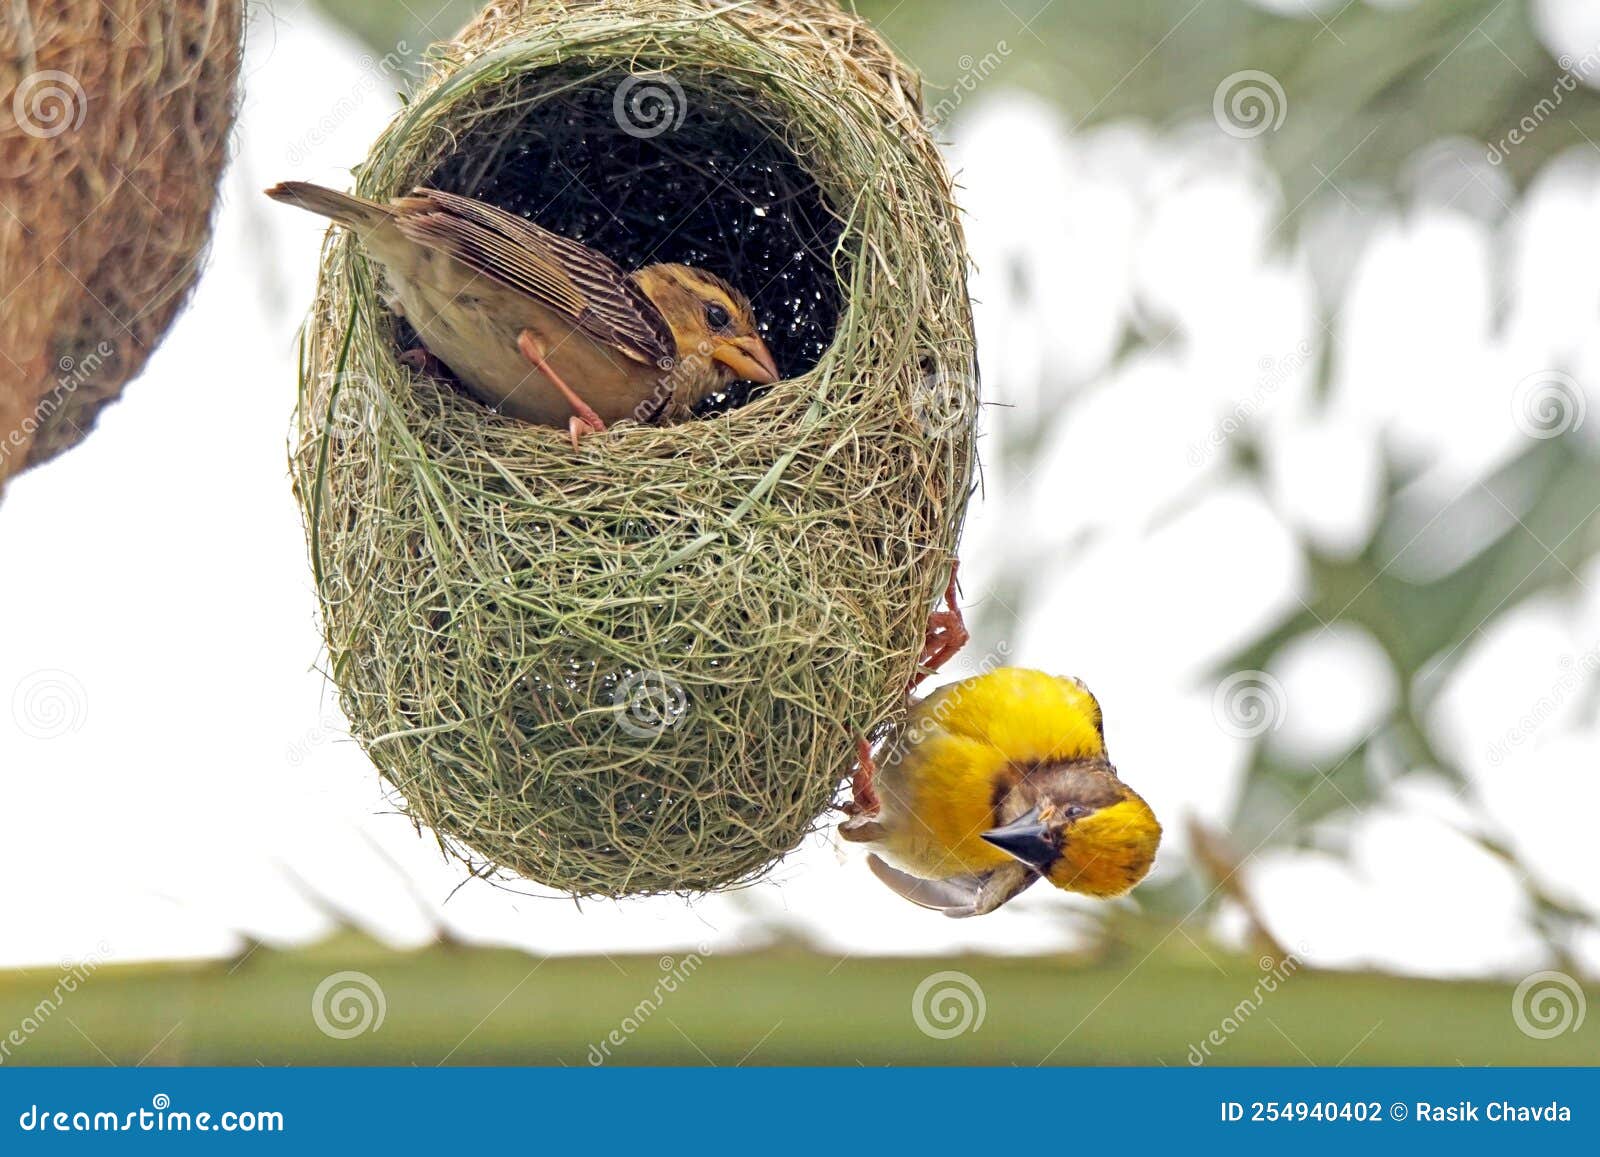 baya viver male in nesting session